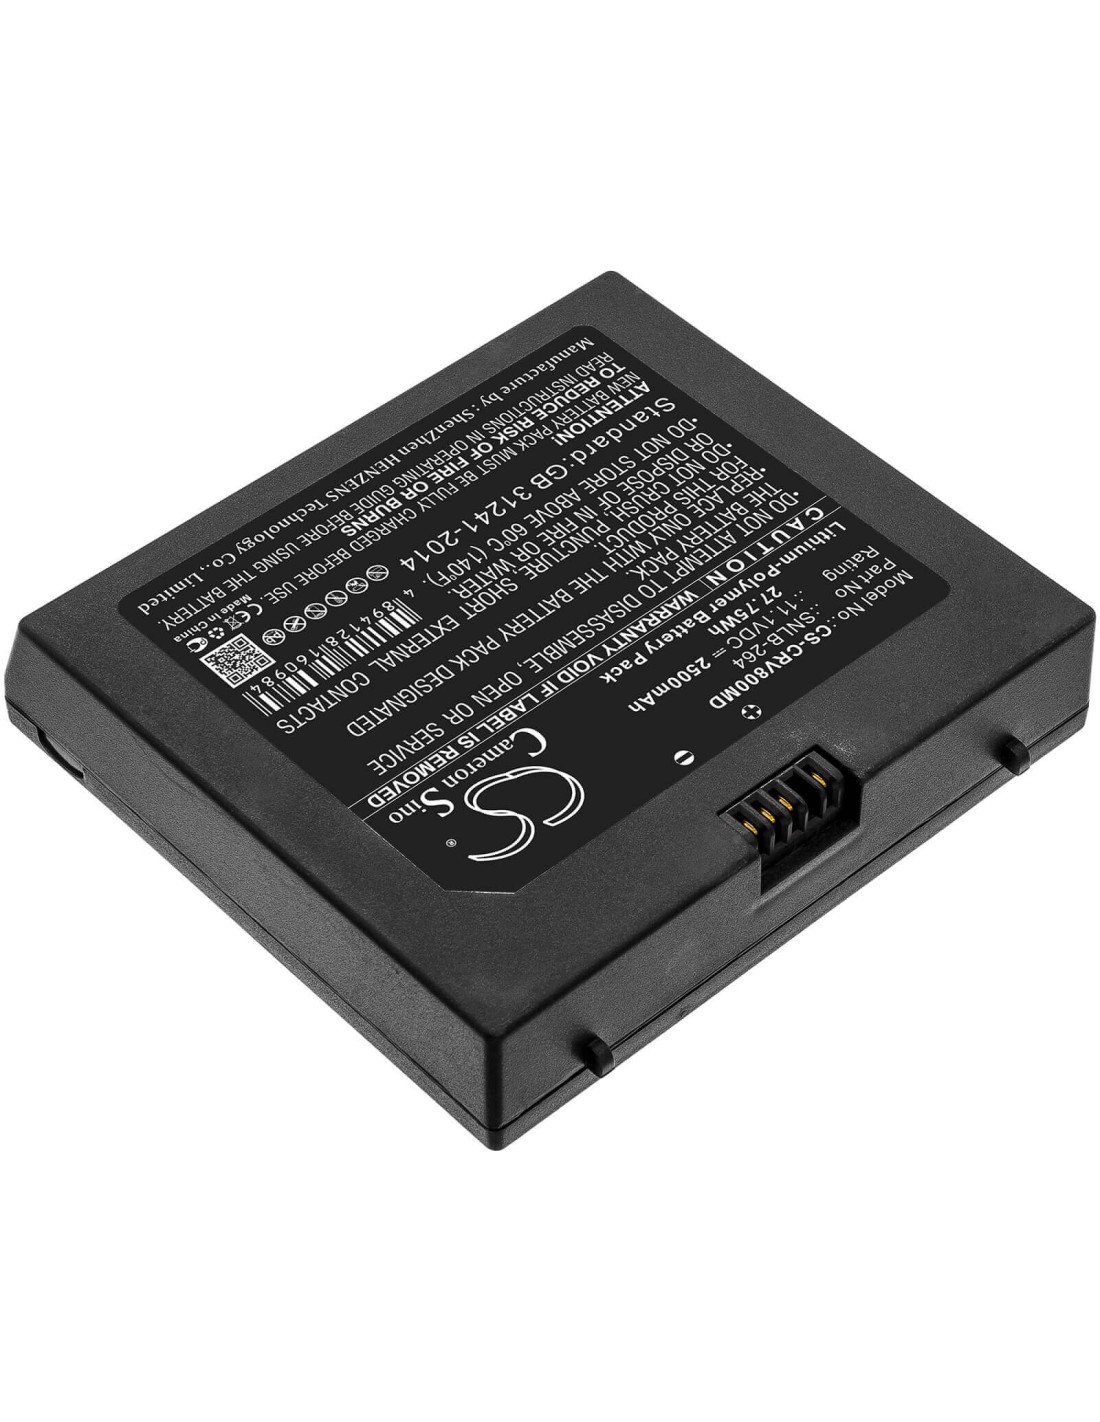 Battery for Carejoy, H8, Handheld Portable Ultrasound Scanner H8 11.1V, 2500mAh - 27.75Wh